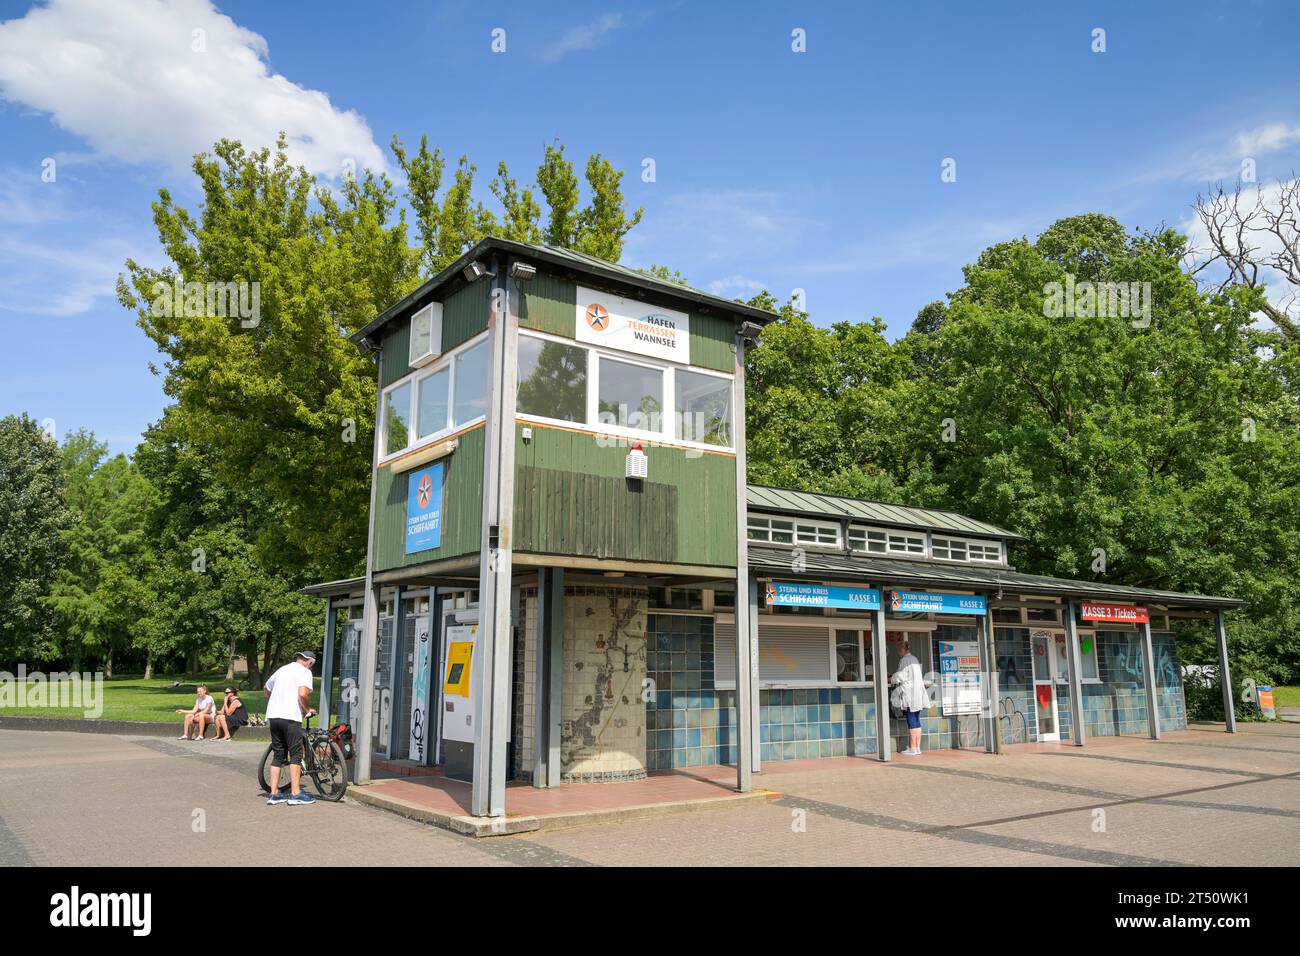 Kassenhaus Stern und Kreis Schifffahrt, Ronnebypromenade, Wannsee, Steglitz-Zehlendorf, Berlin, Deutschland Stock Photo